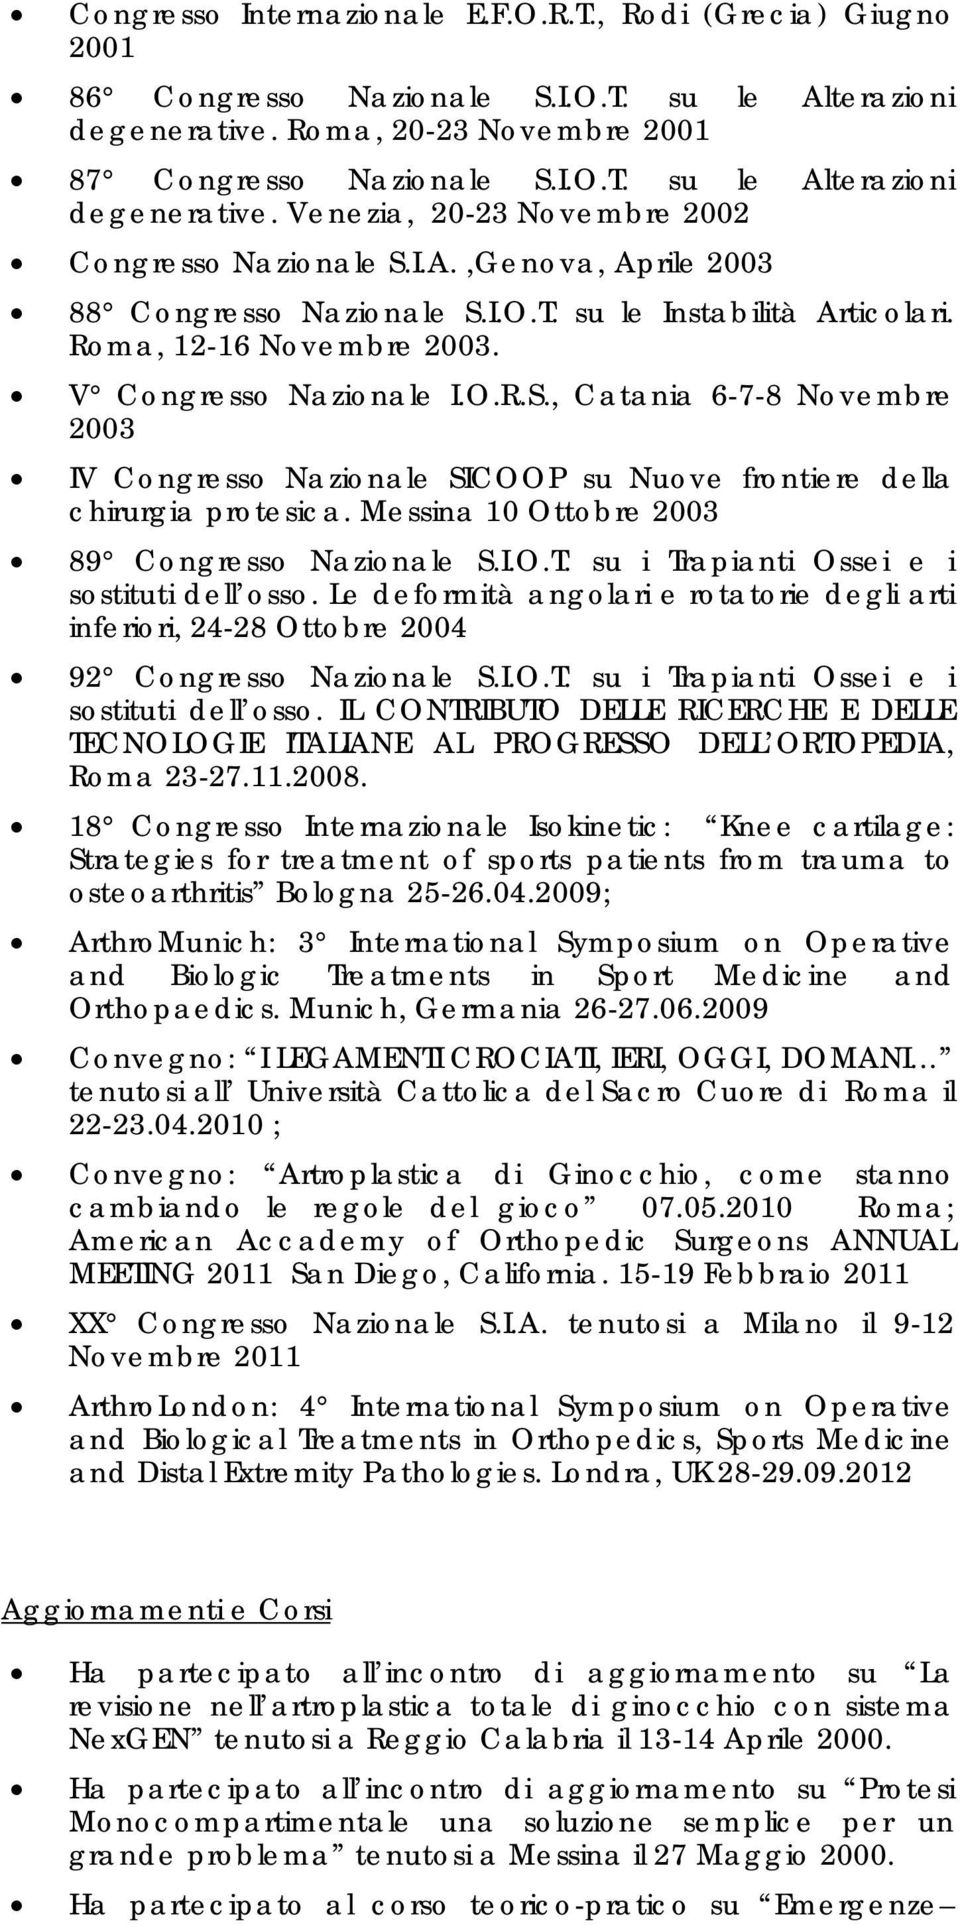 Messina 10 Ottobre 2003 89 Congresso Nazionale S.I.O.T. su i Trapianti Ossei e i sostituti dell osso.